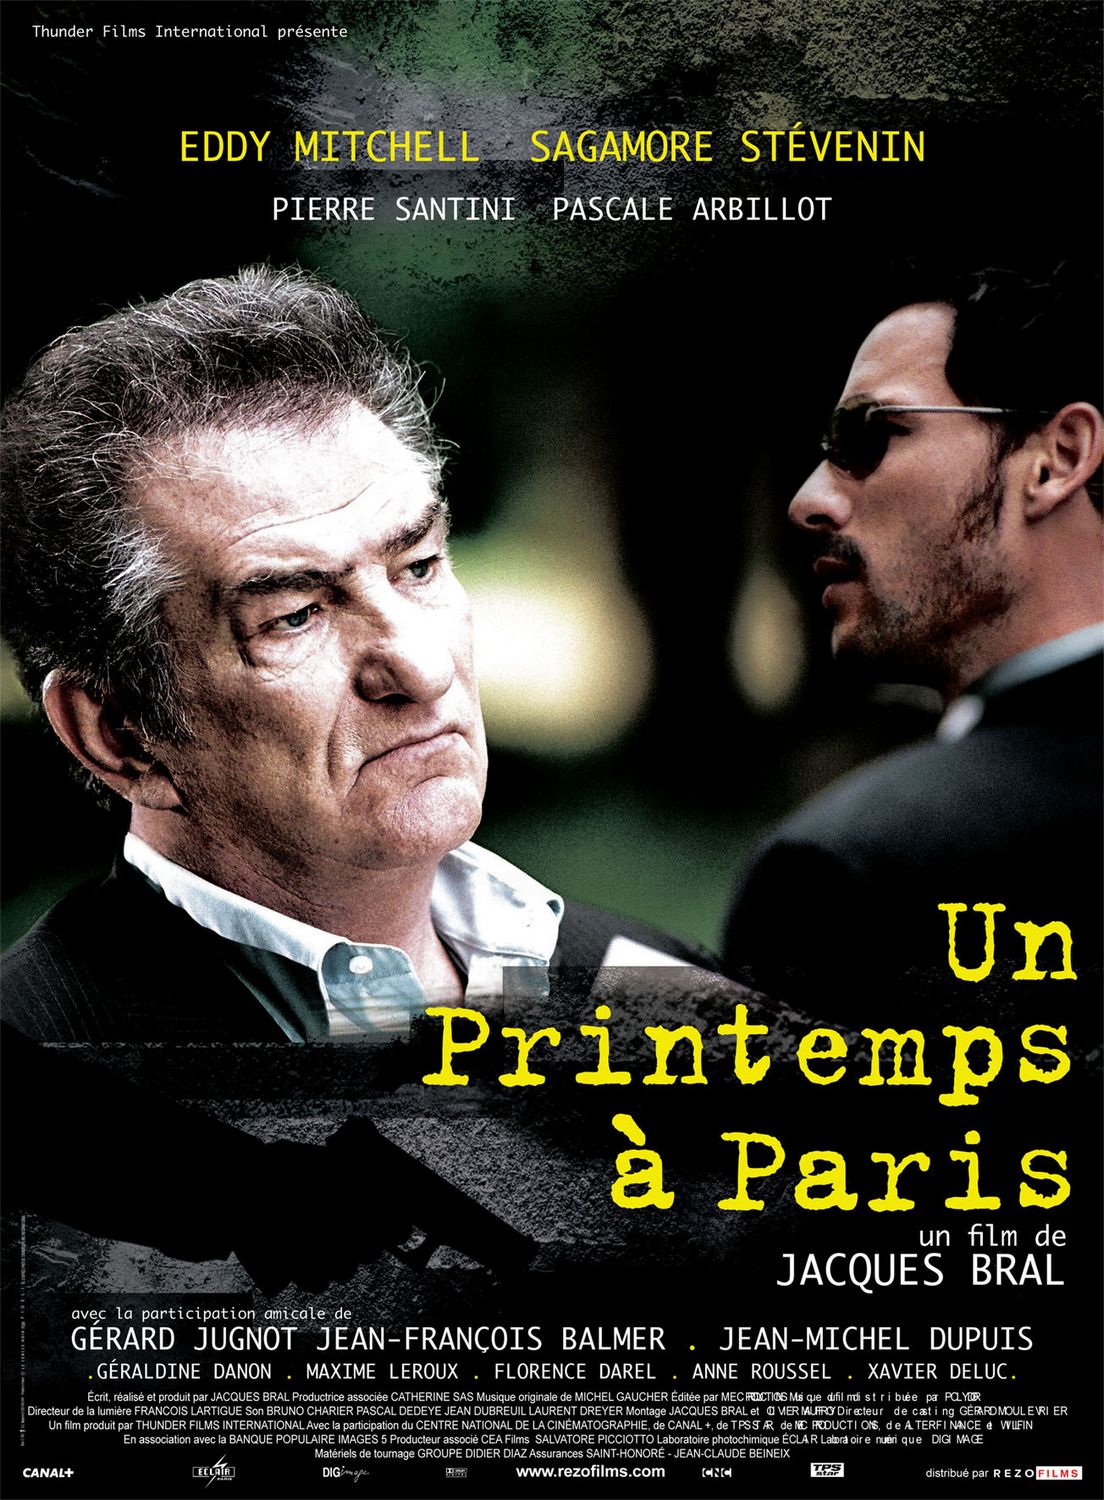 Extra Large Movie Poster Image for Un printemps à Paris 